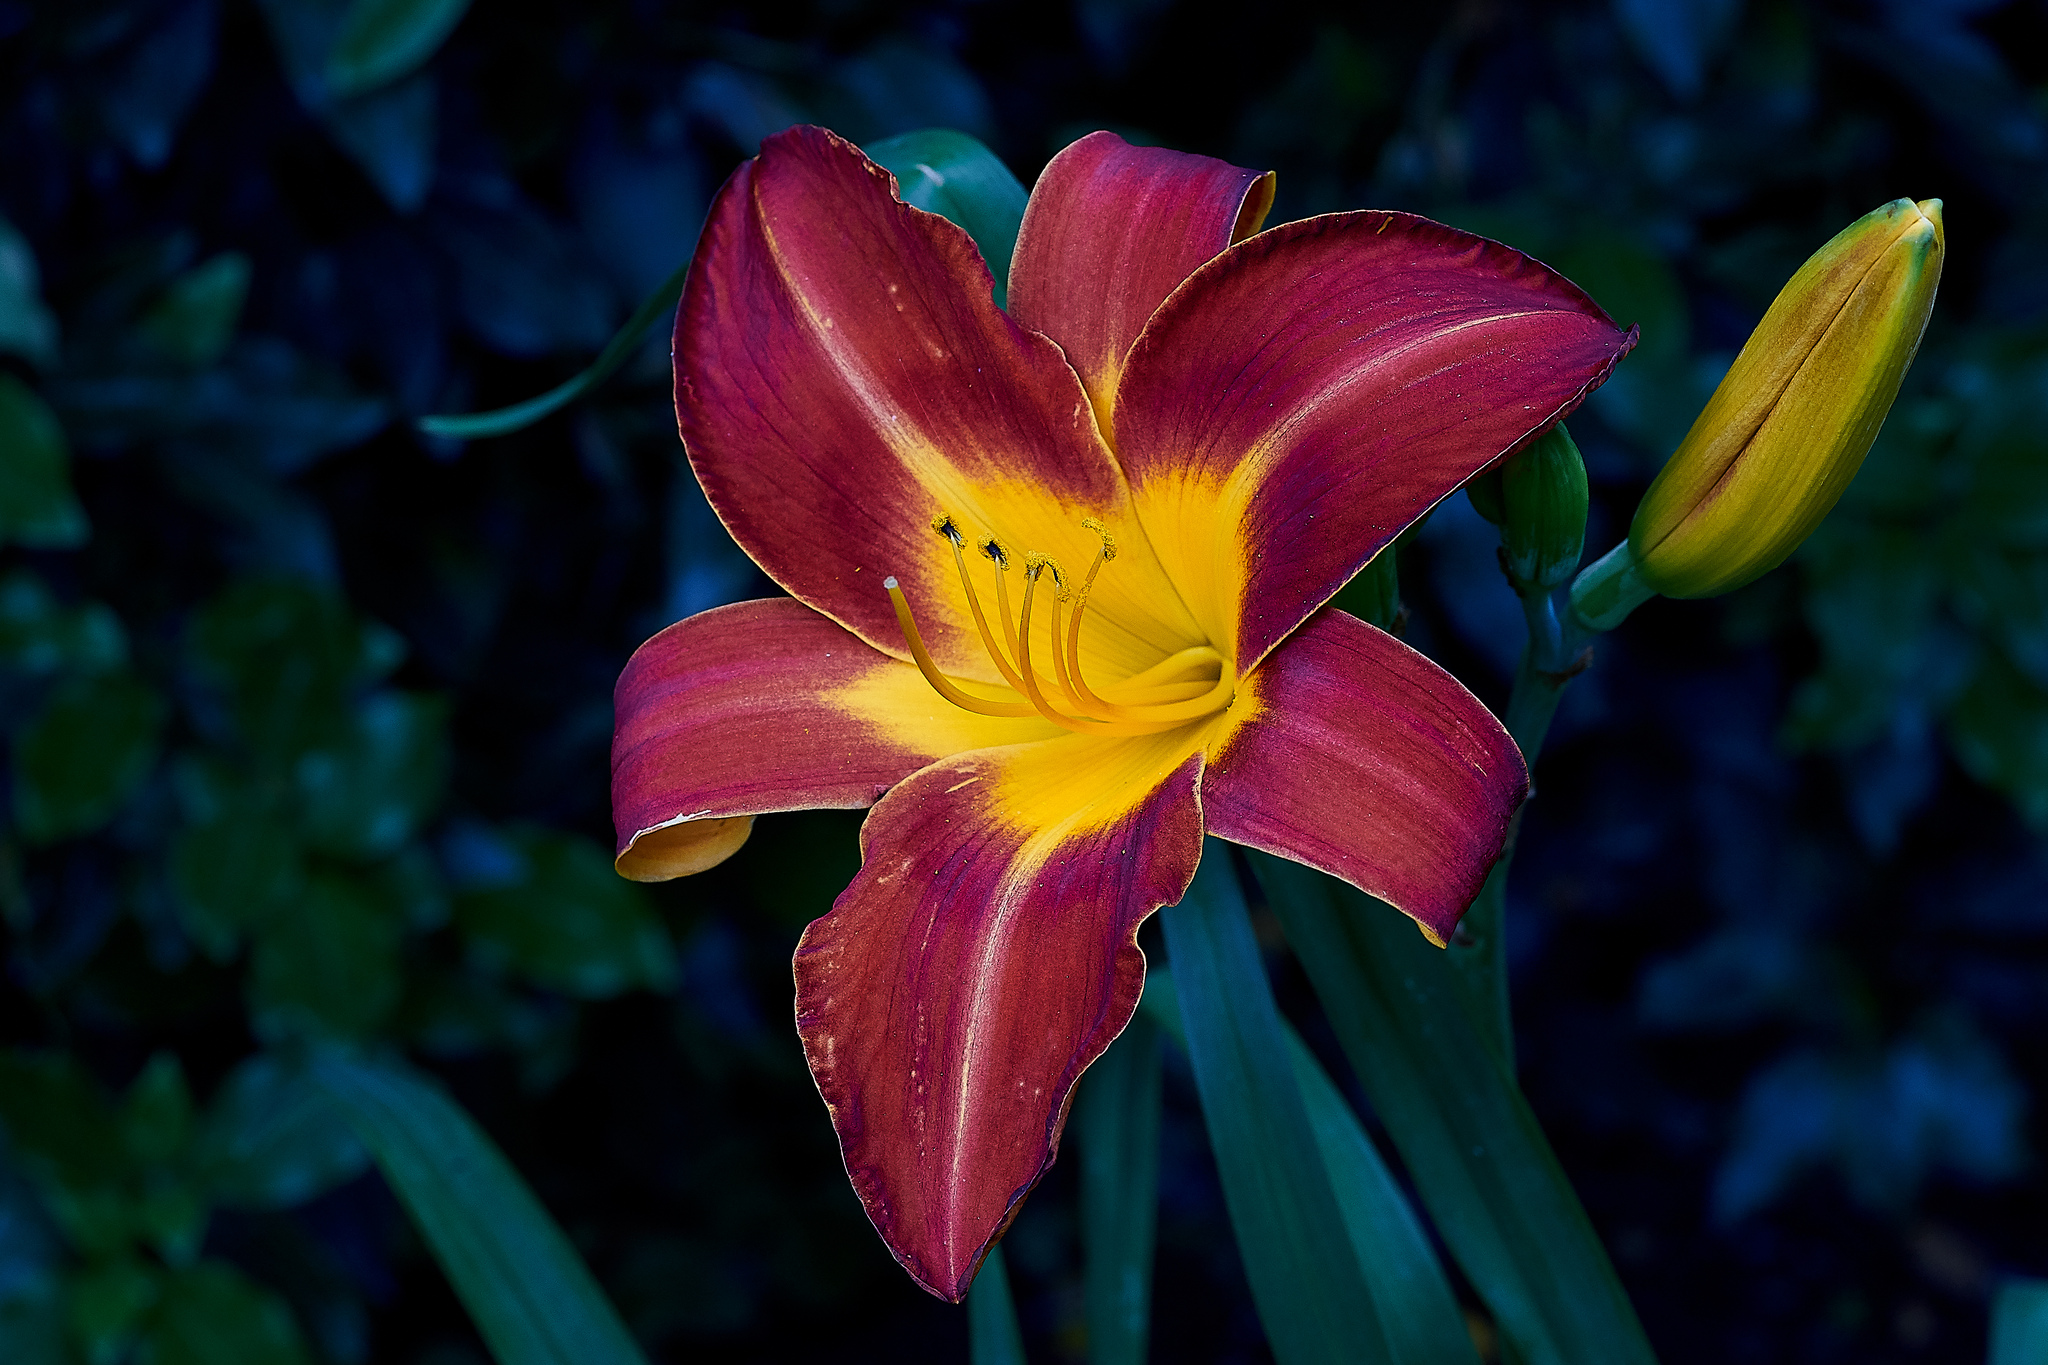 Фото флора лилия лилии - бесплатные картинки на Fonwall